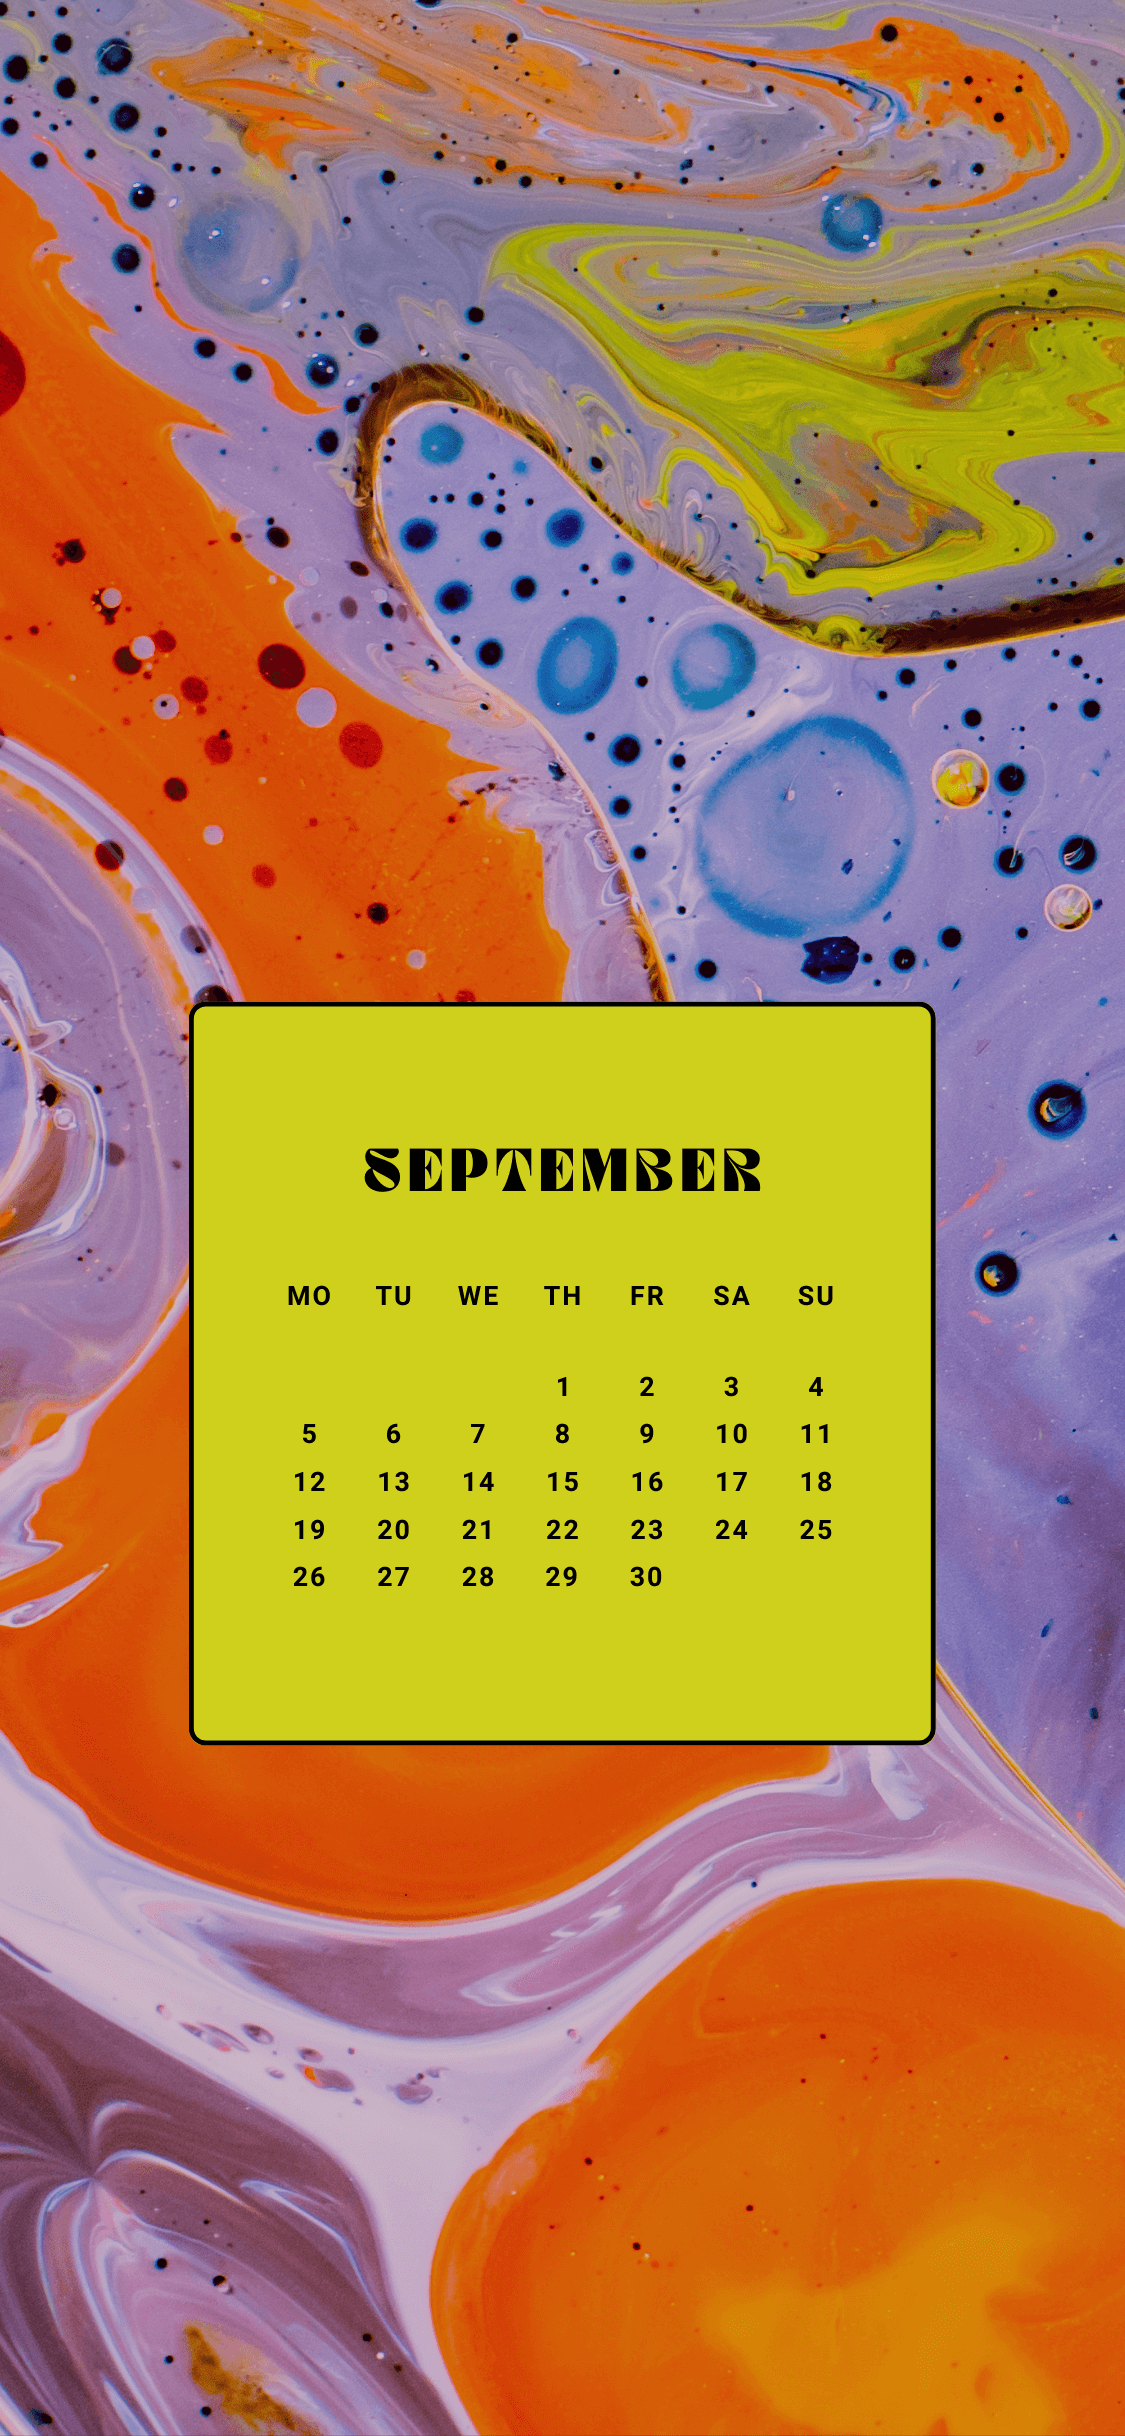 September Calendar Wallpaper for iPhone